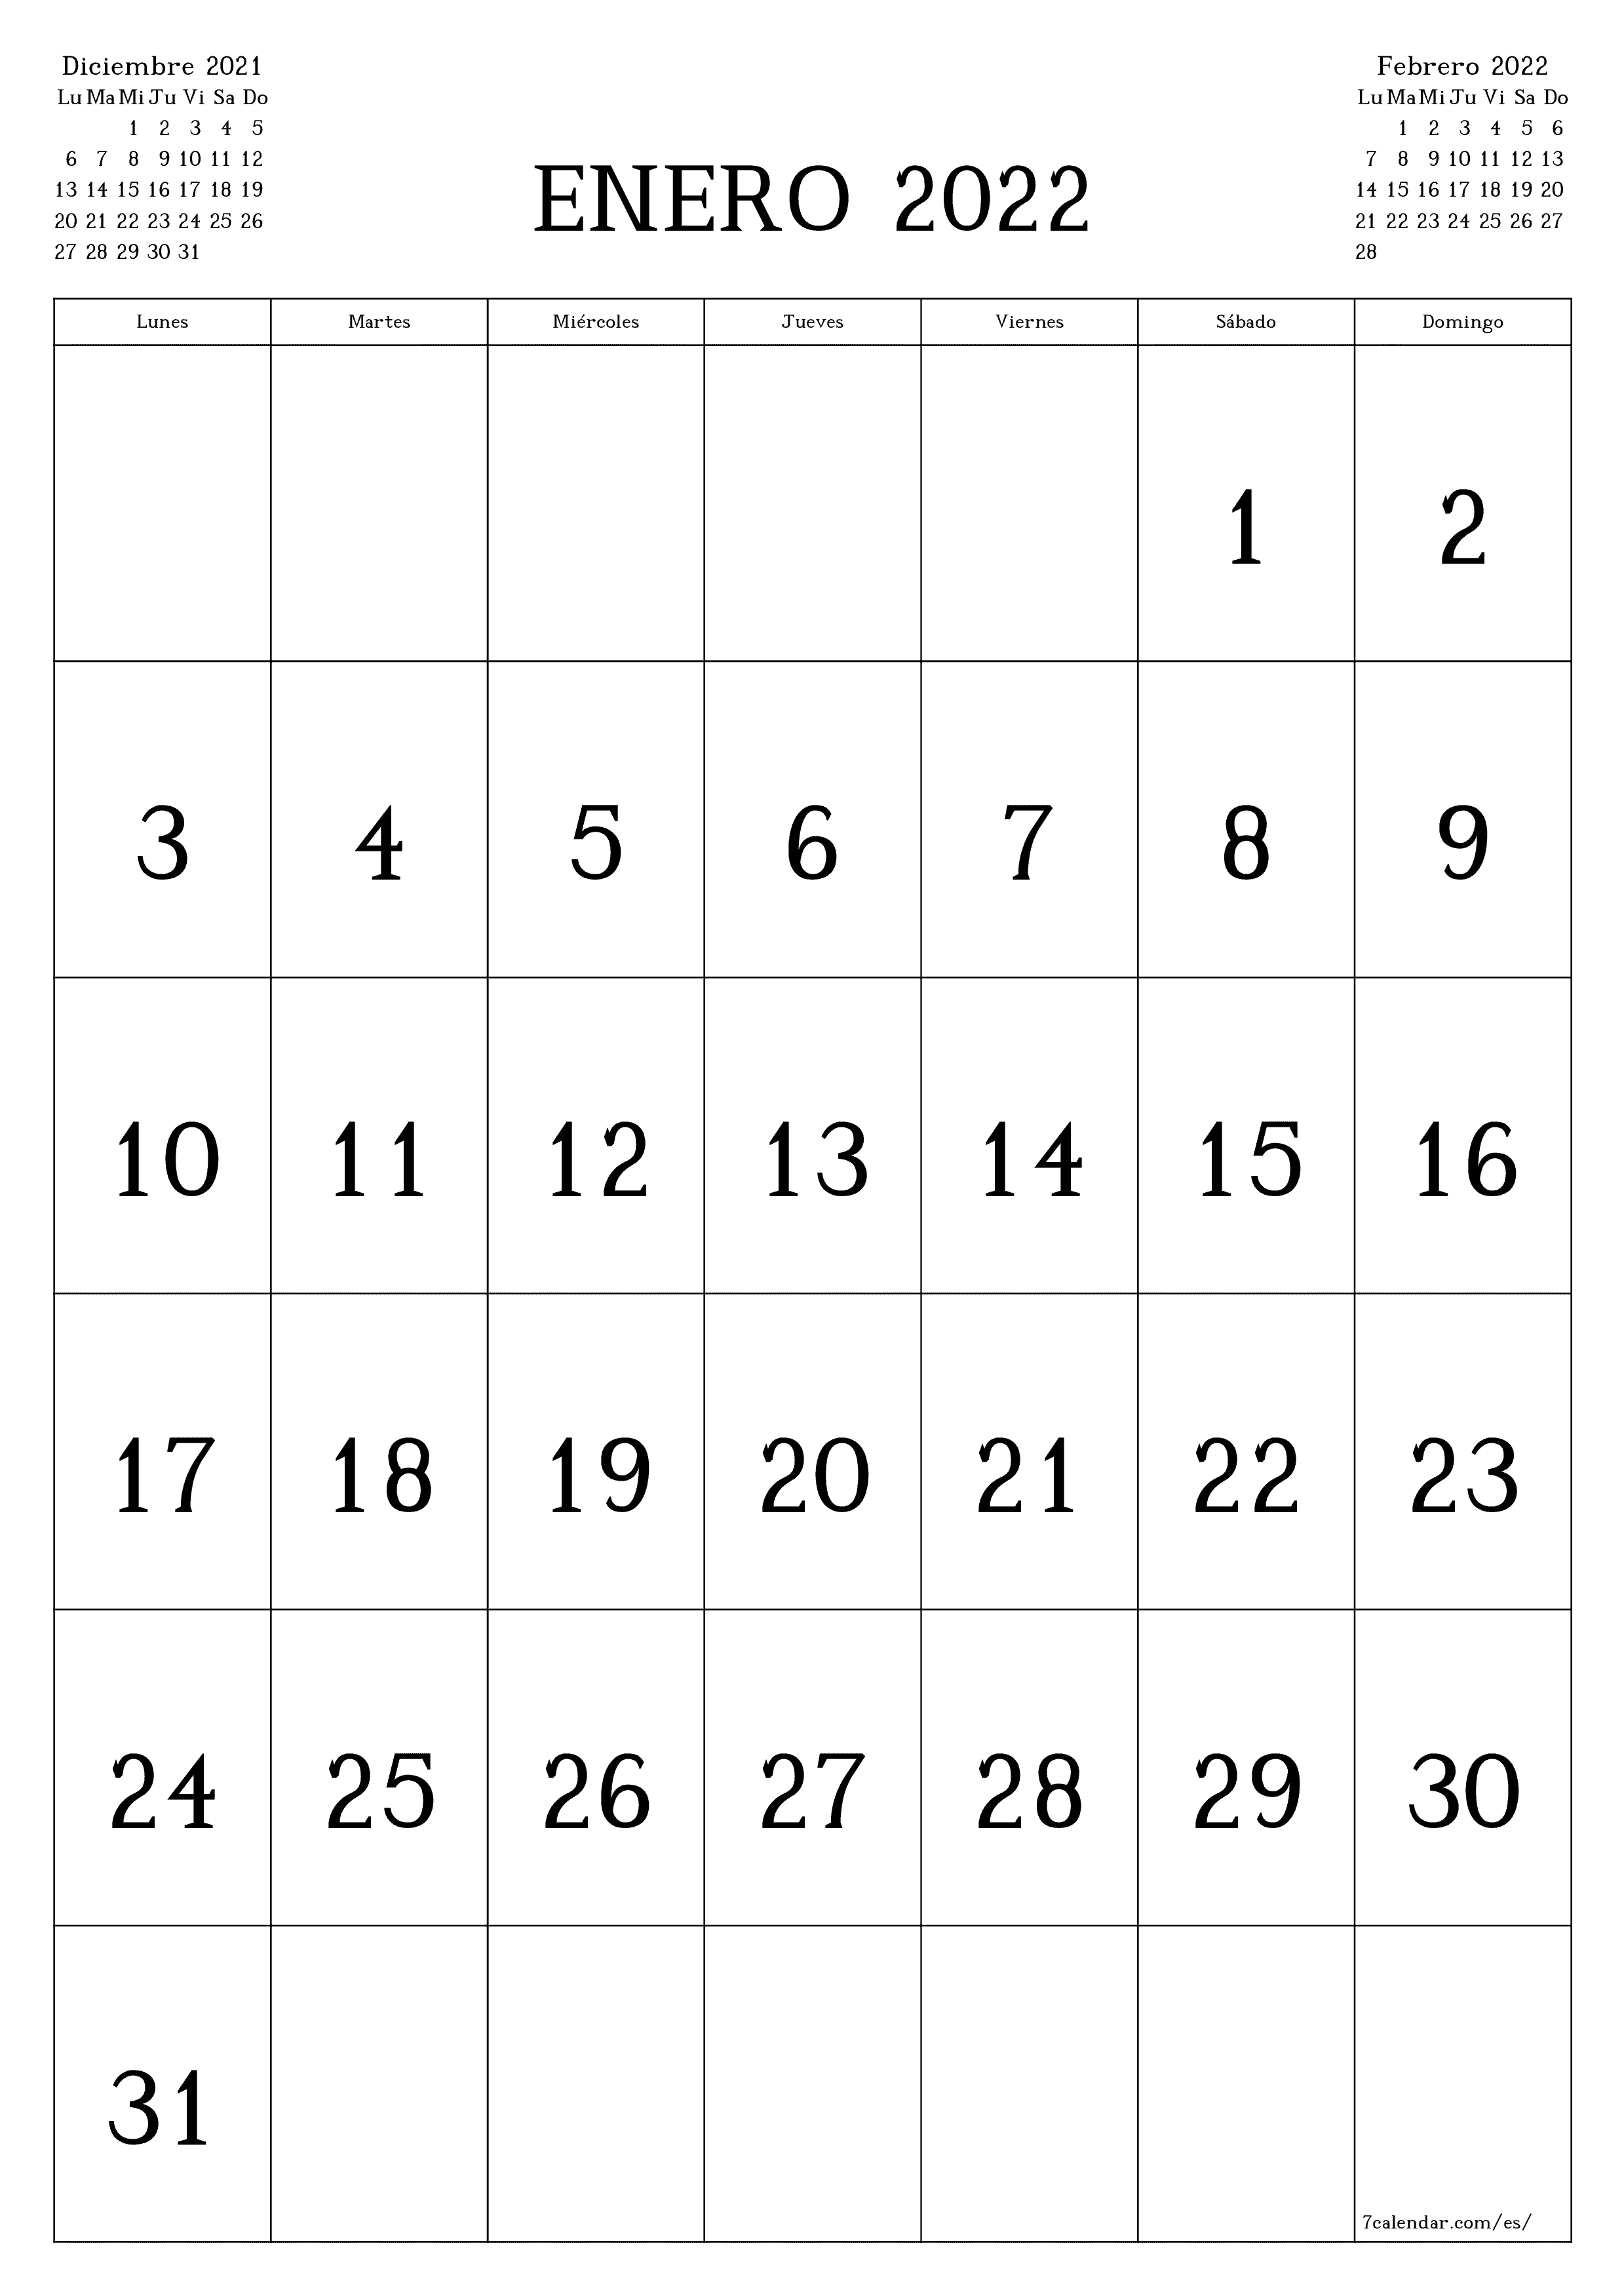 Calendario mensual en blanco para el mes Enero 2022 guardar e imprimir en PDF PNG Spanish - 7calendar.com